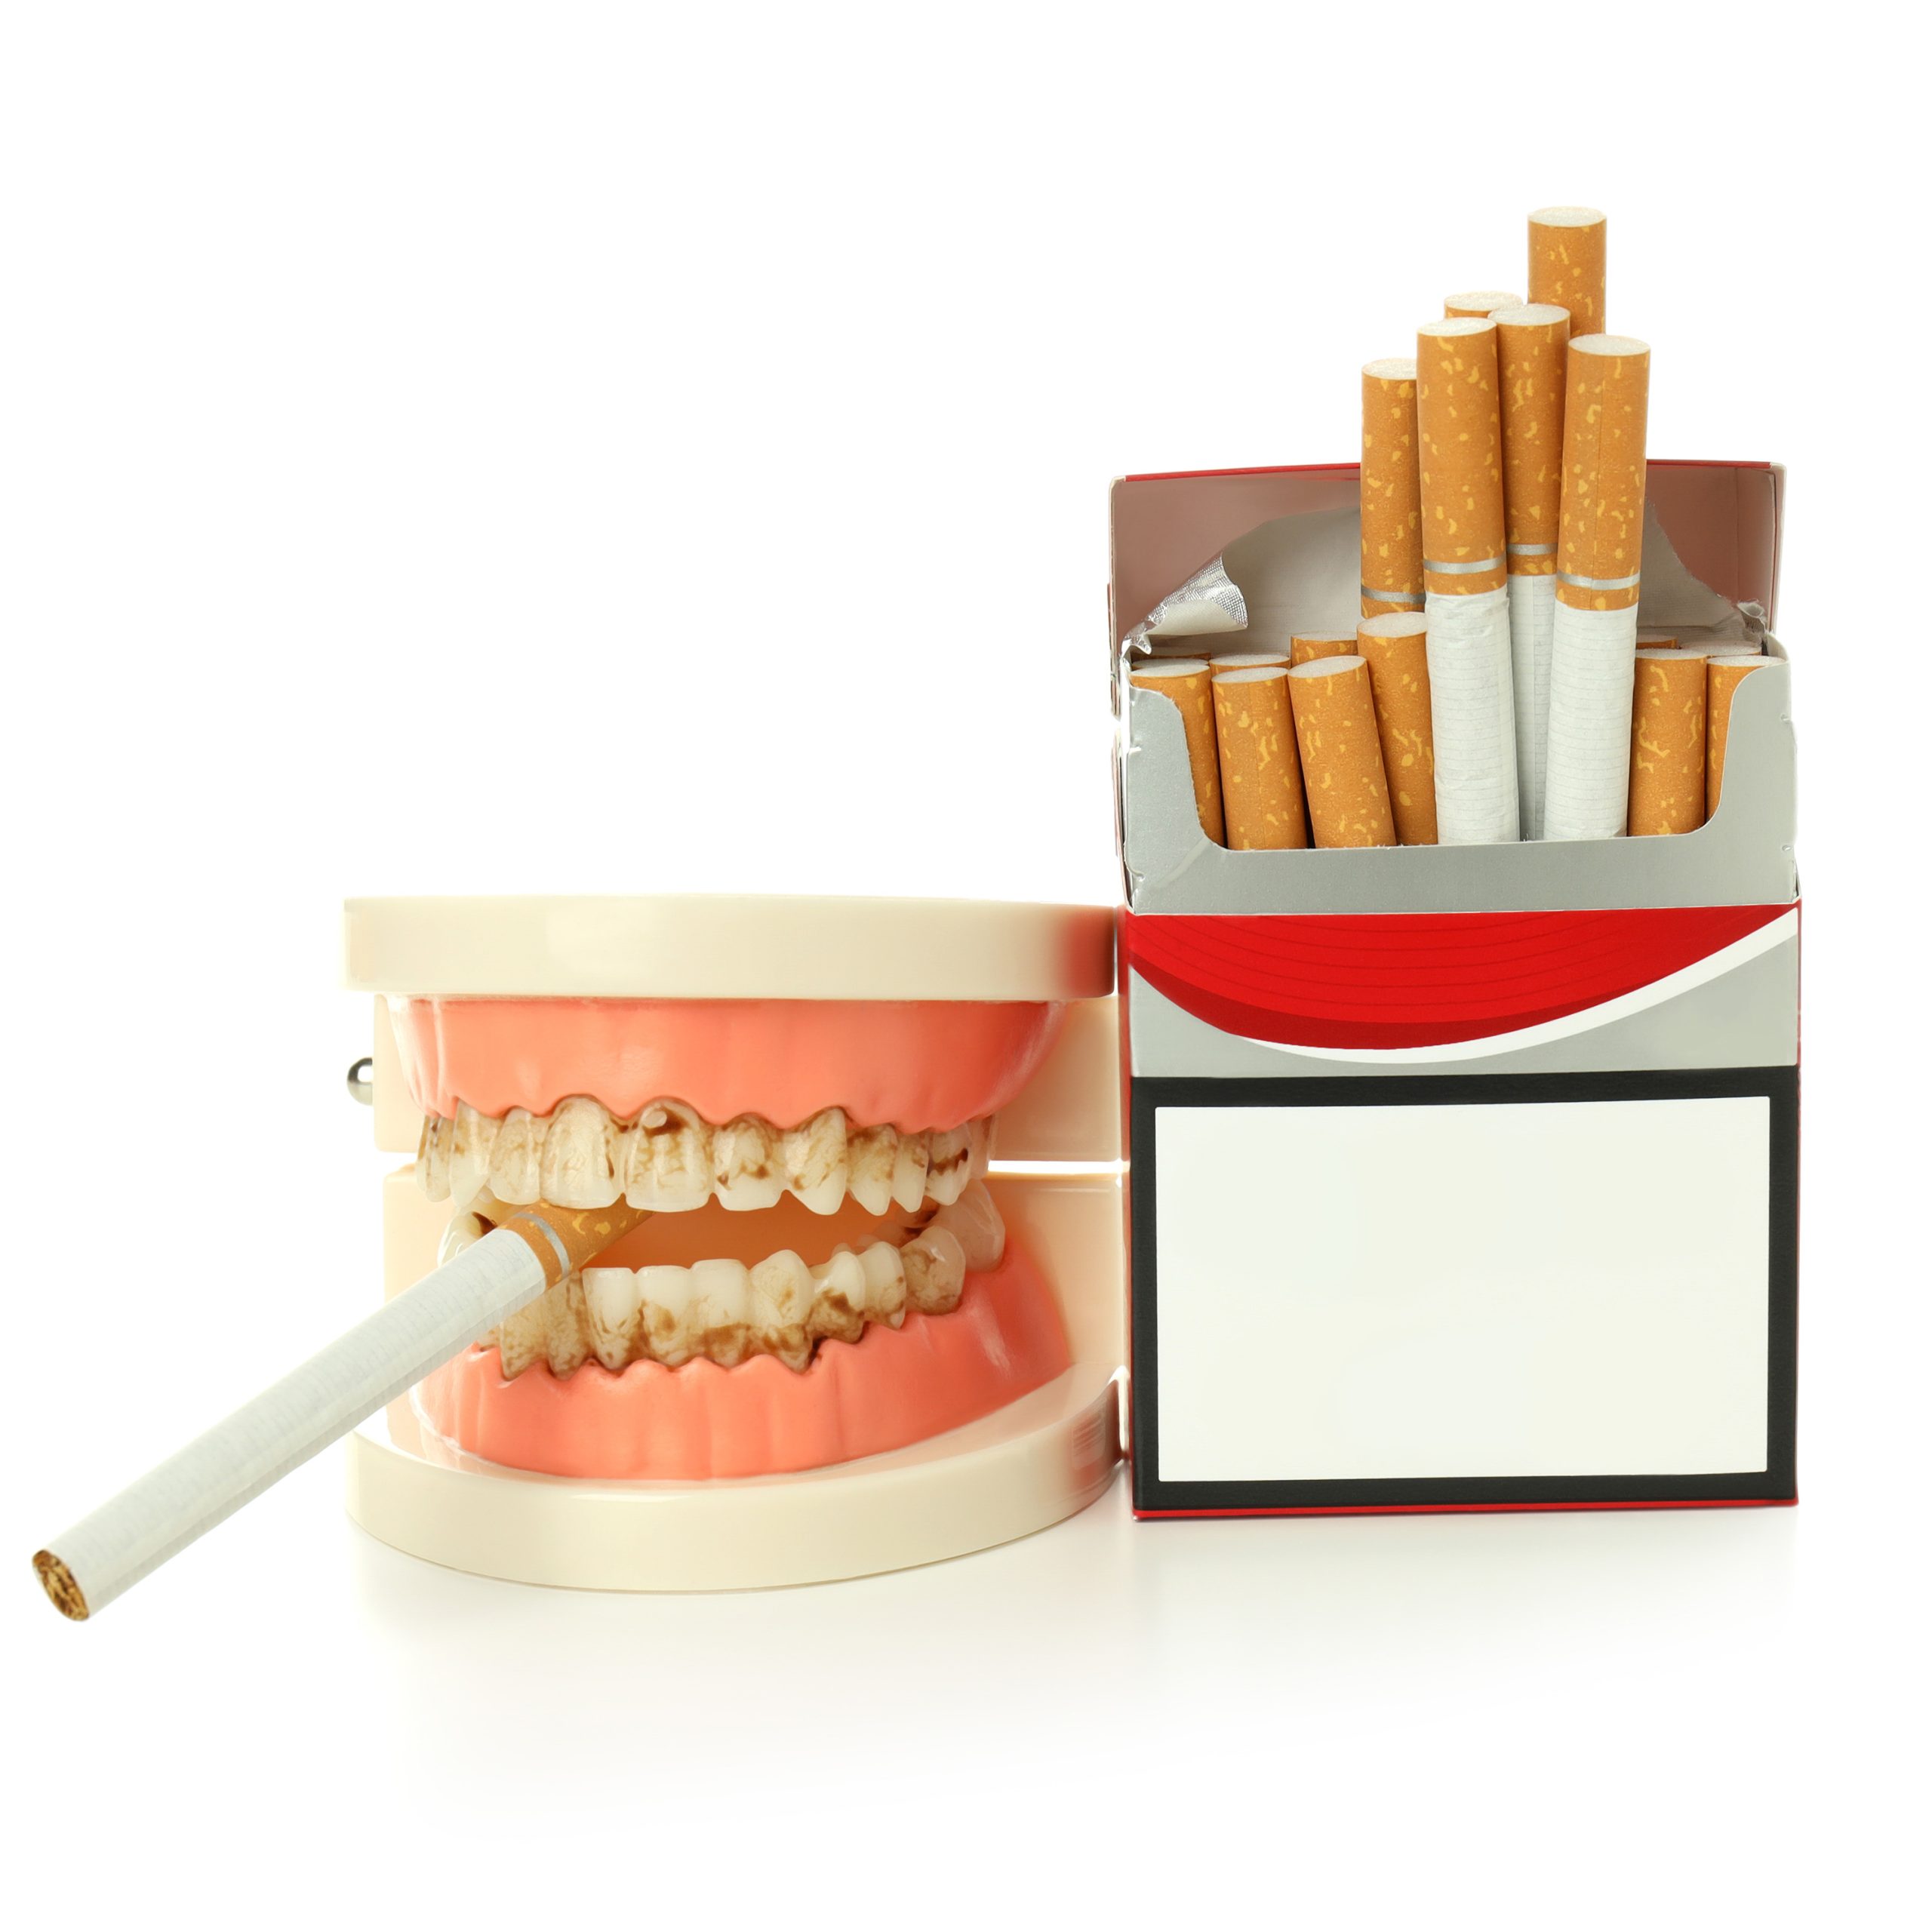 تاثیر سیگار بر سلامت دهان و دندان